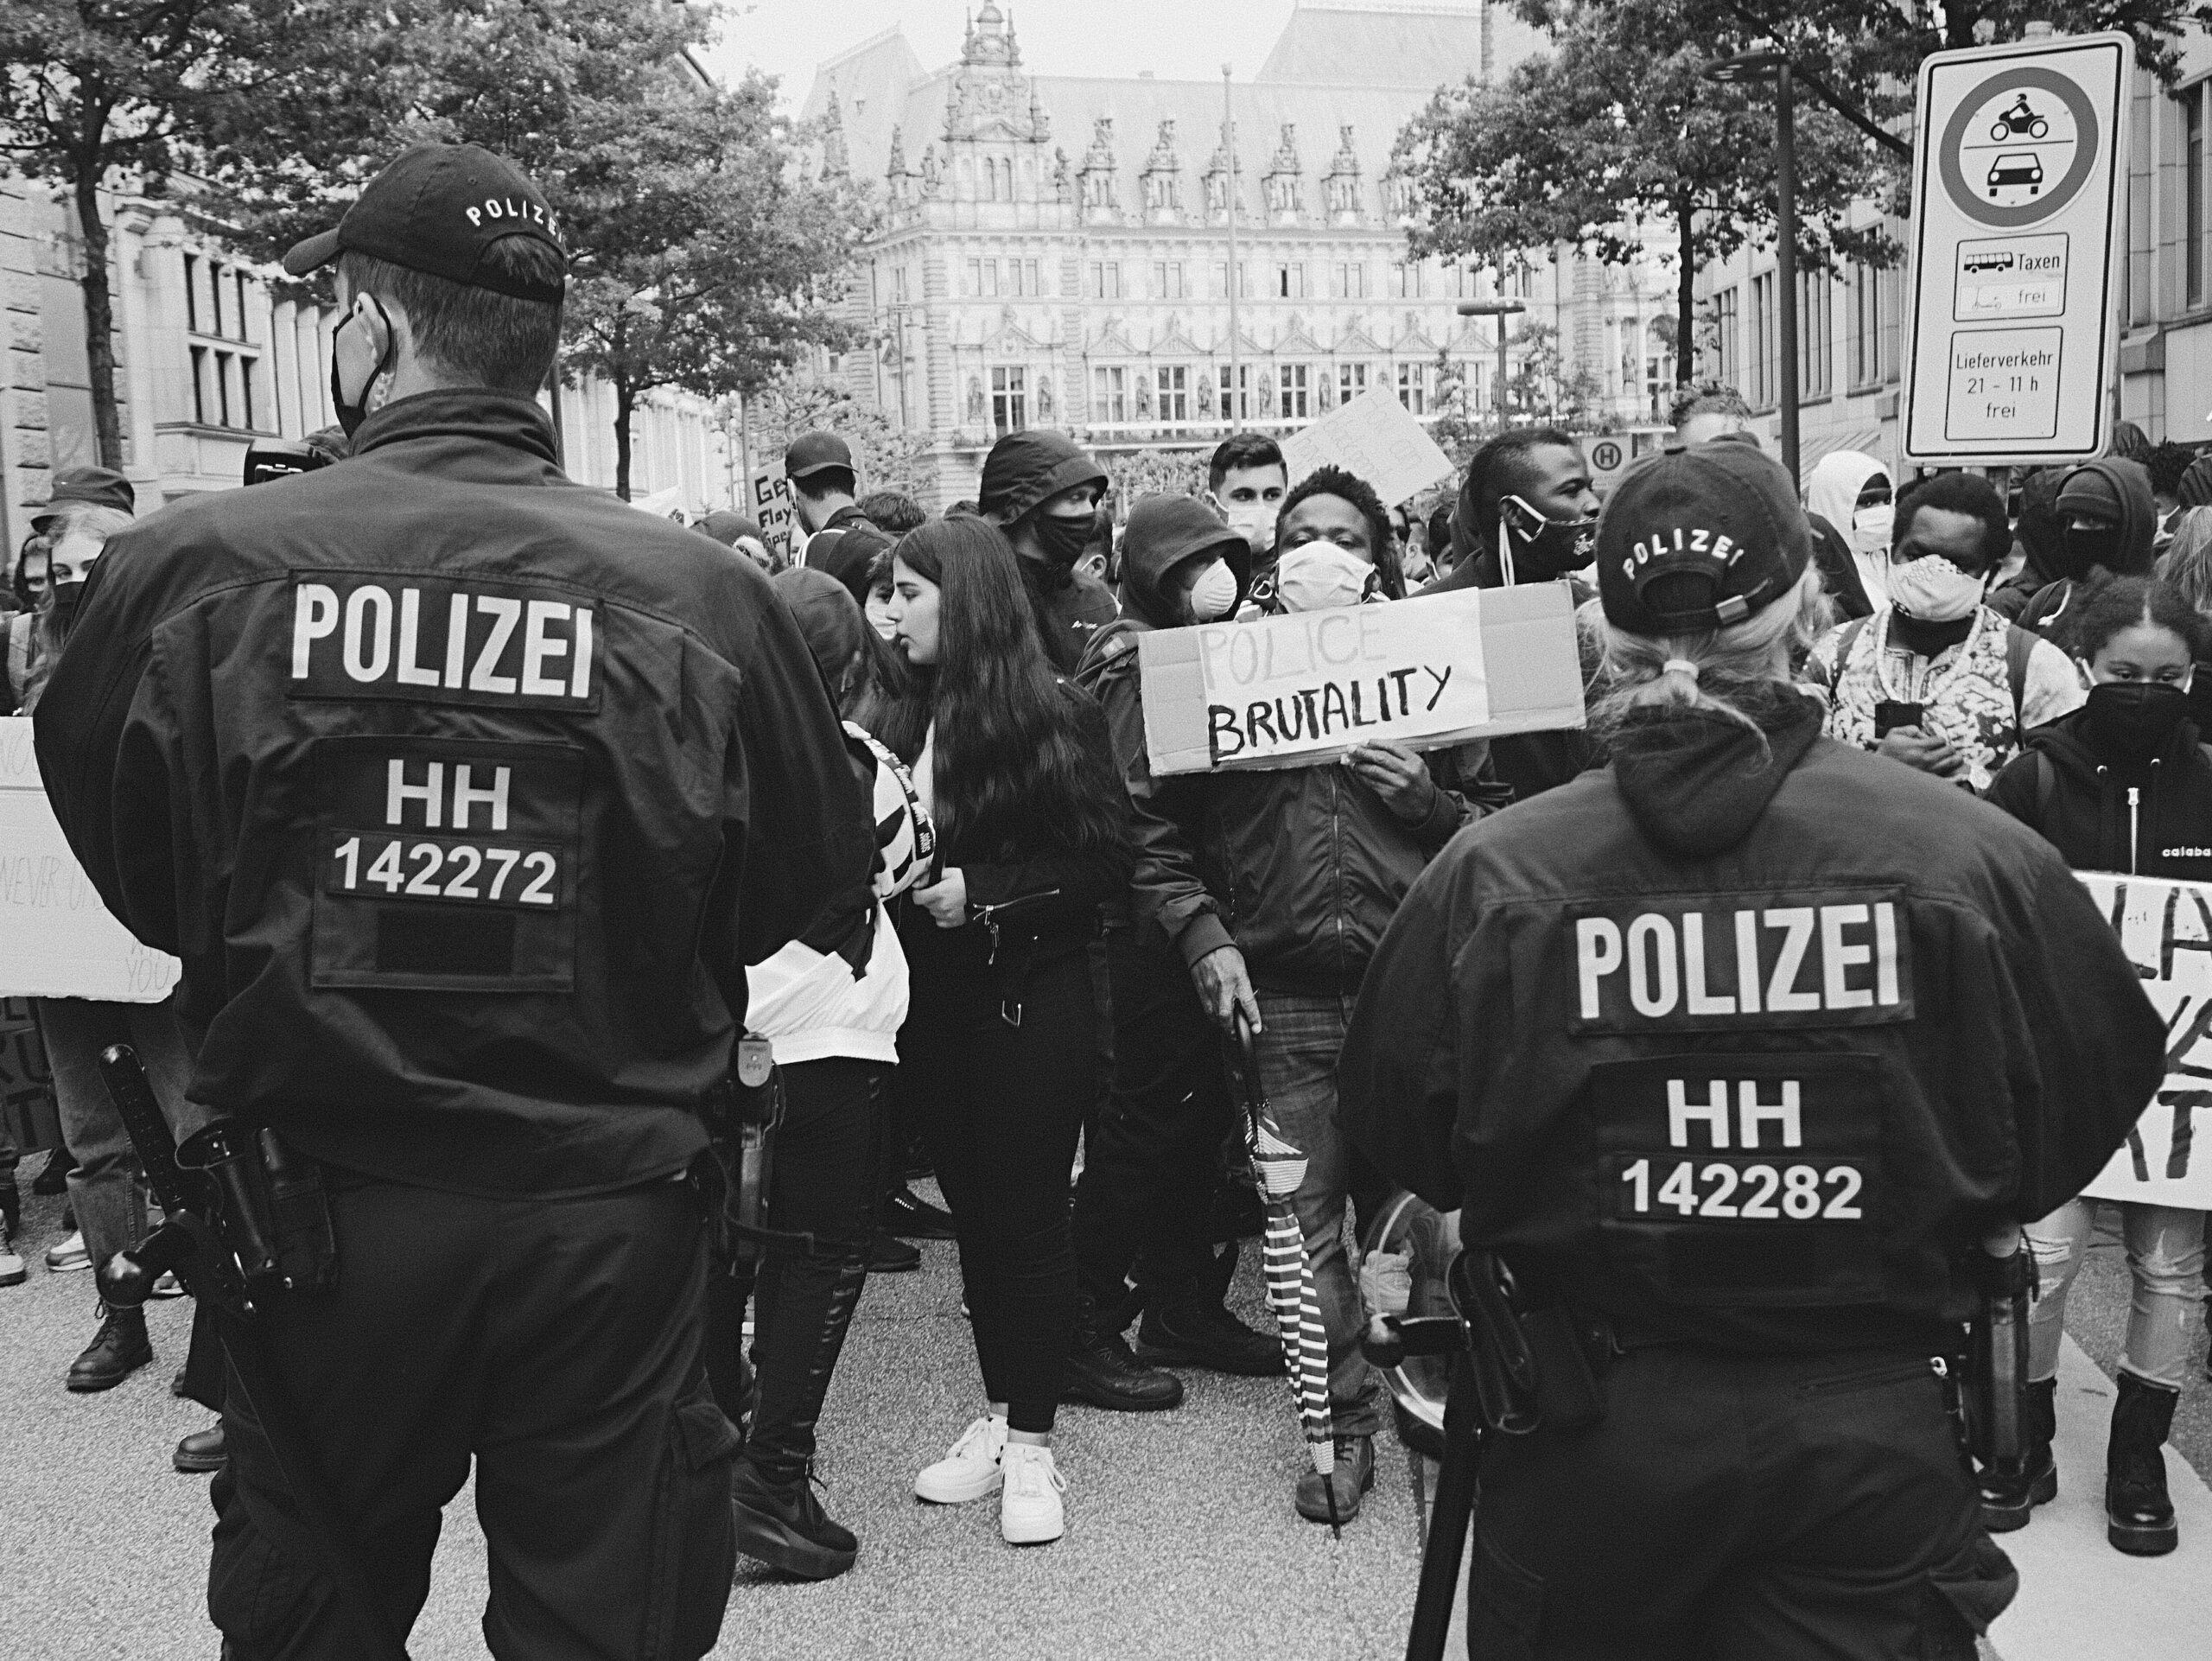 Eglosheim: Polizei ermittelt nach Körperverletzung bei Fußballspiel in Ludwigsburg